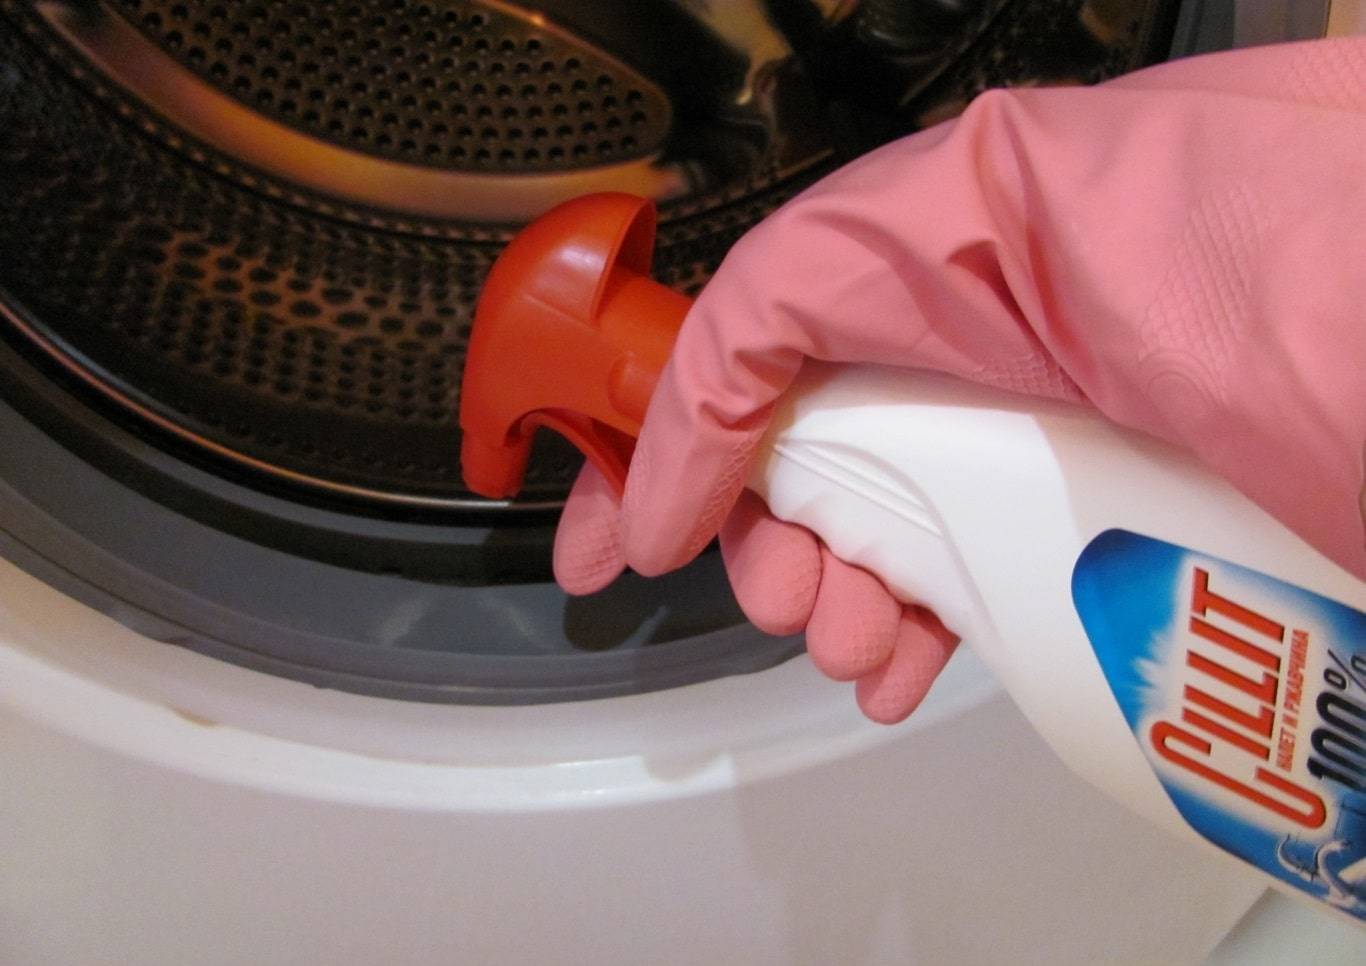 Как почистить стиральную машину в домашних условиях – лимонной кислотой, уксусом, содой, от запаха, грязи, накипи